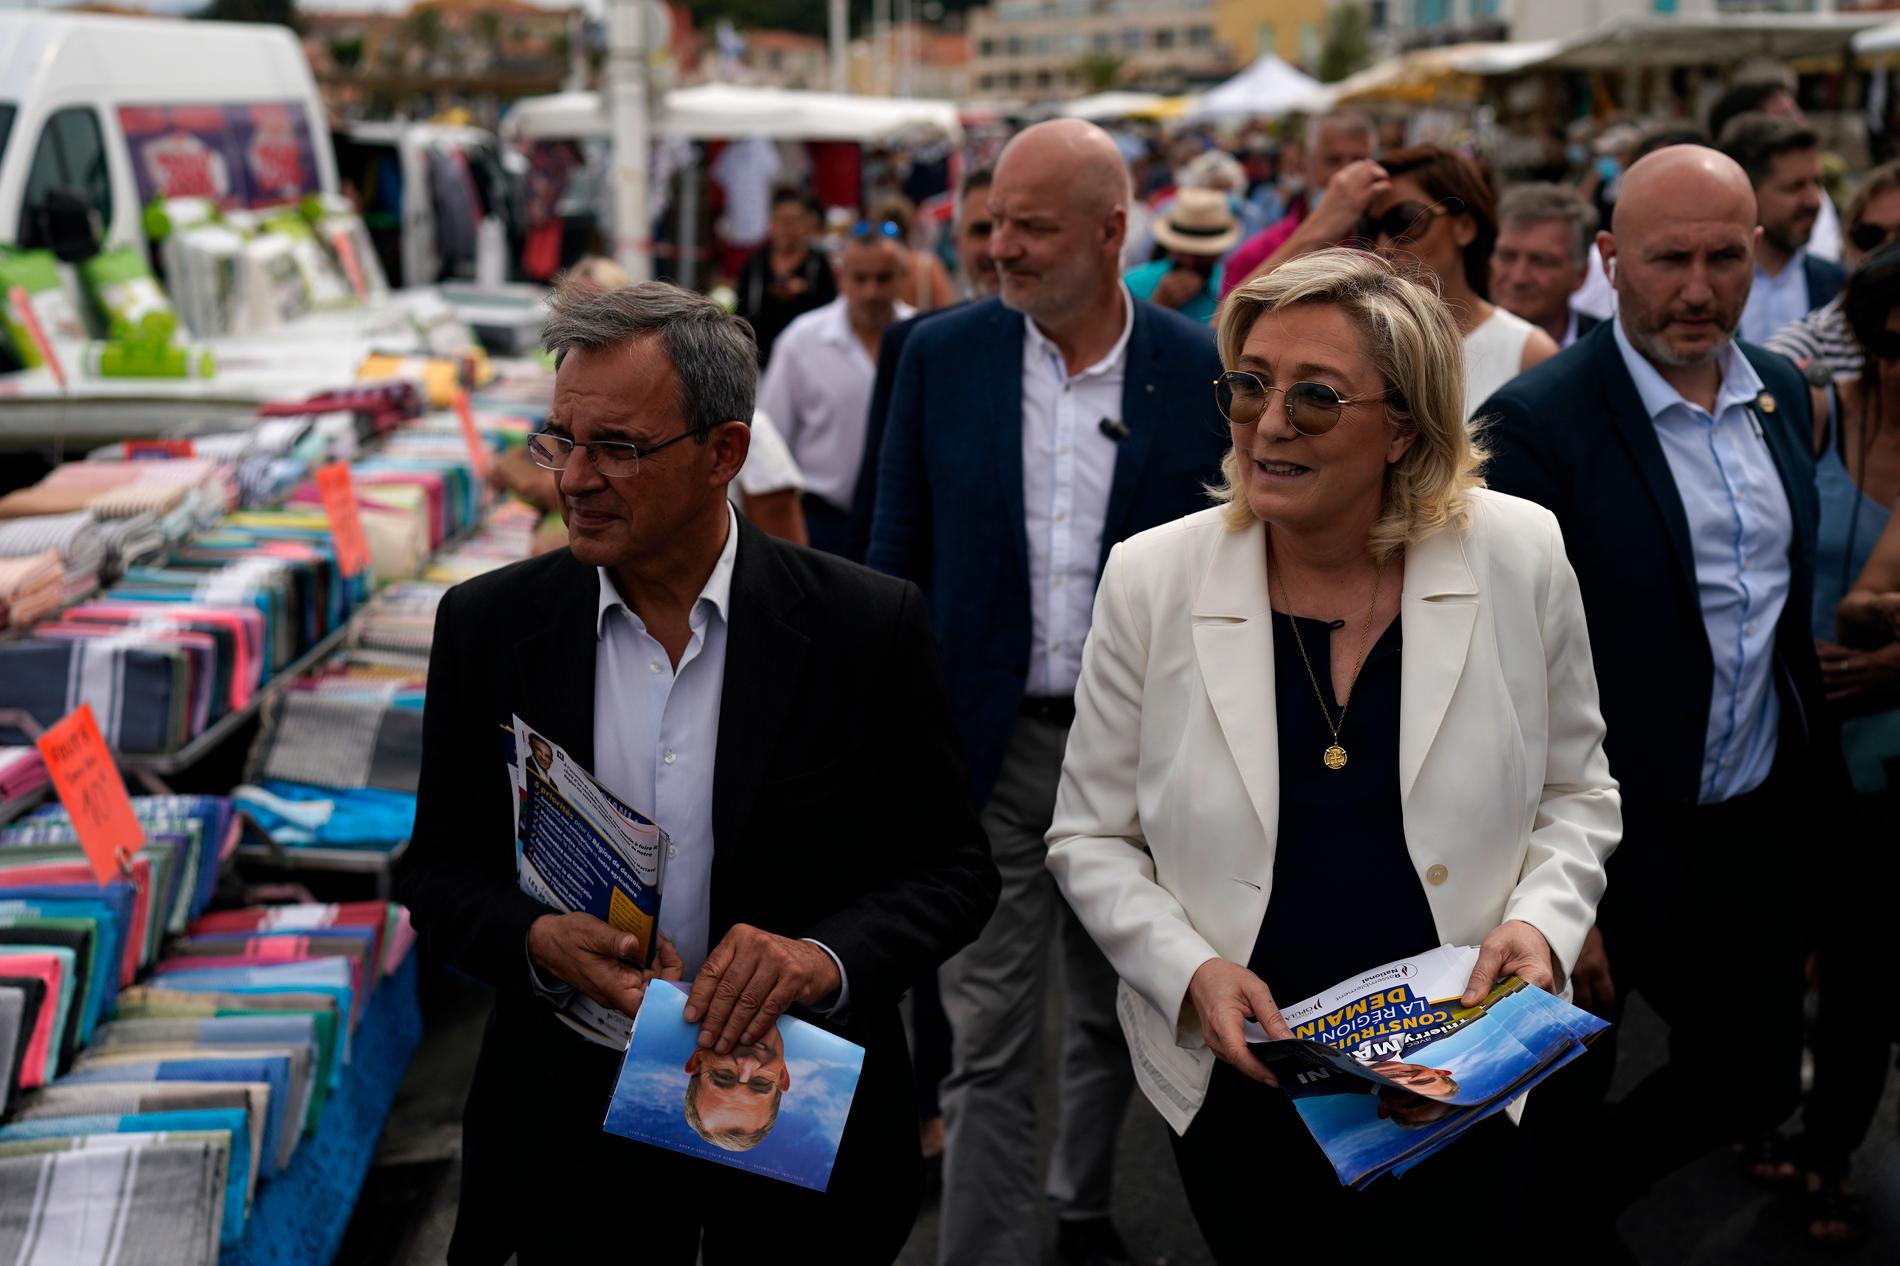 Förre transportministern Thierry Mariani och hans partiledare Marine Le Pen kampanjar för Nationell samling inför det franska regionalvalet.